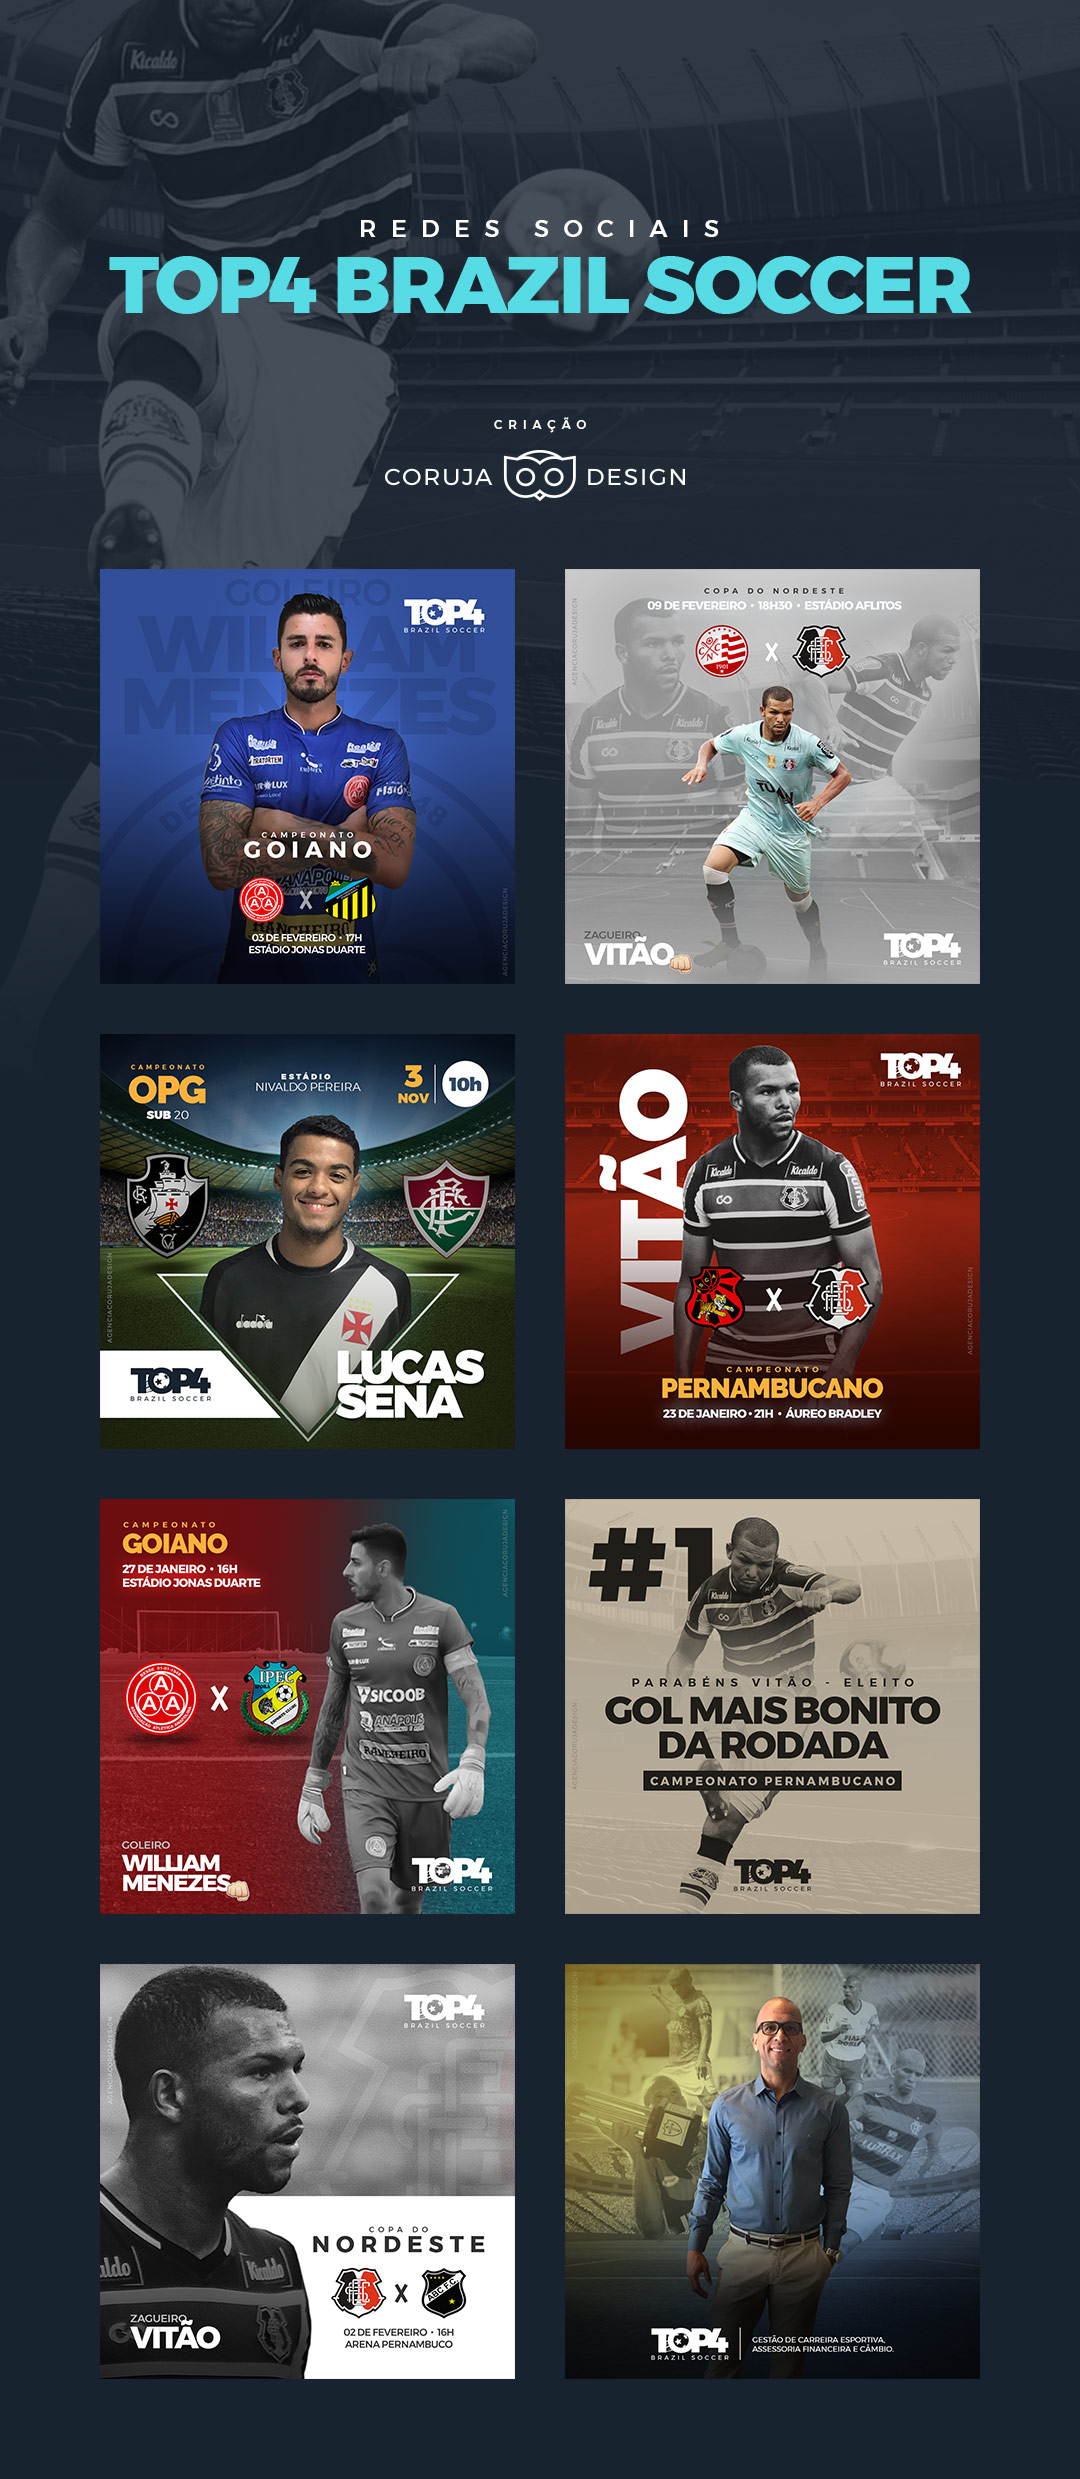 Redes Sociais | Top4 Brazil Soccer